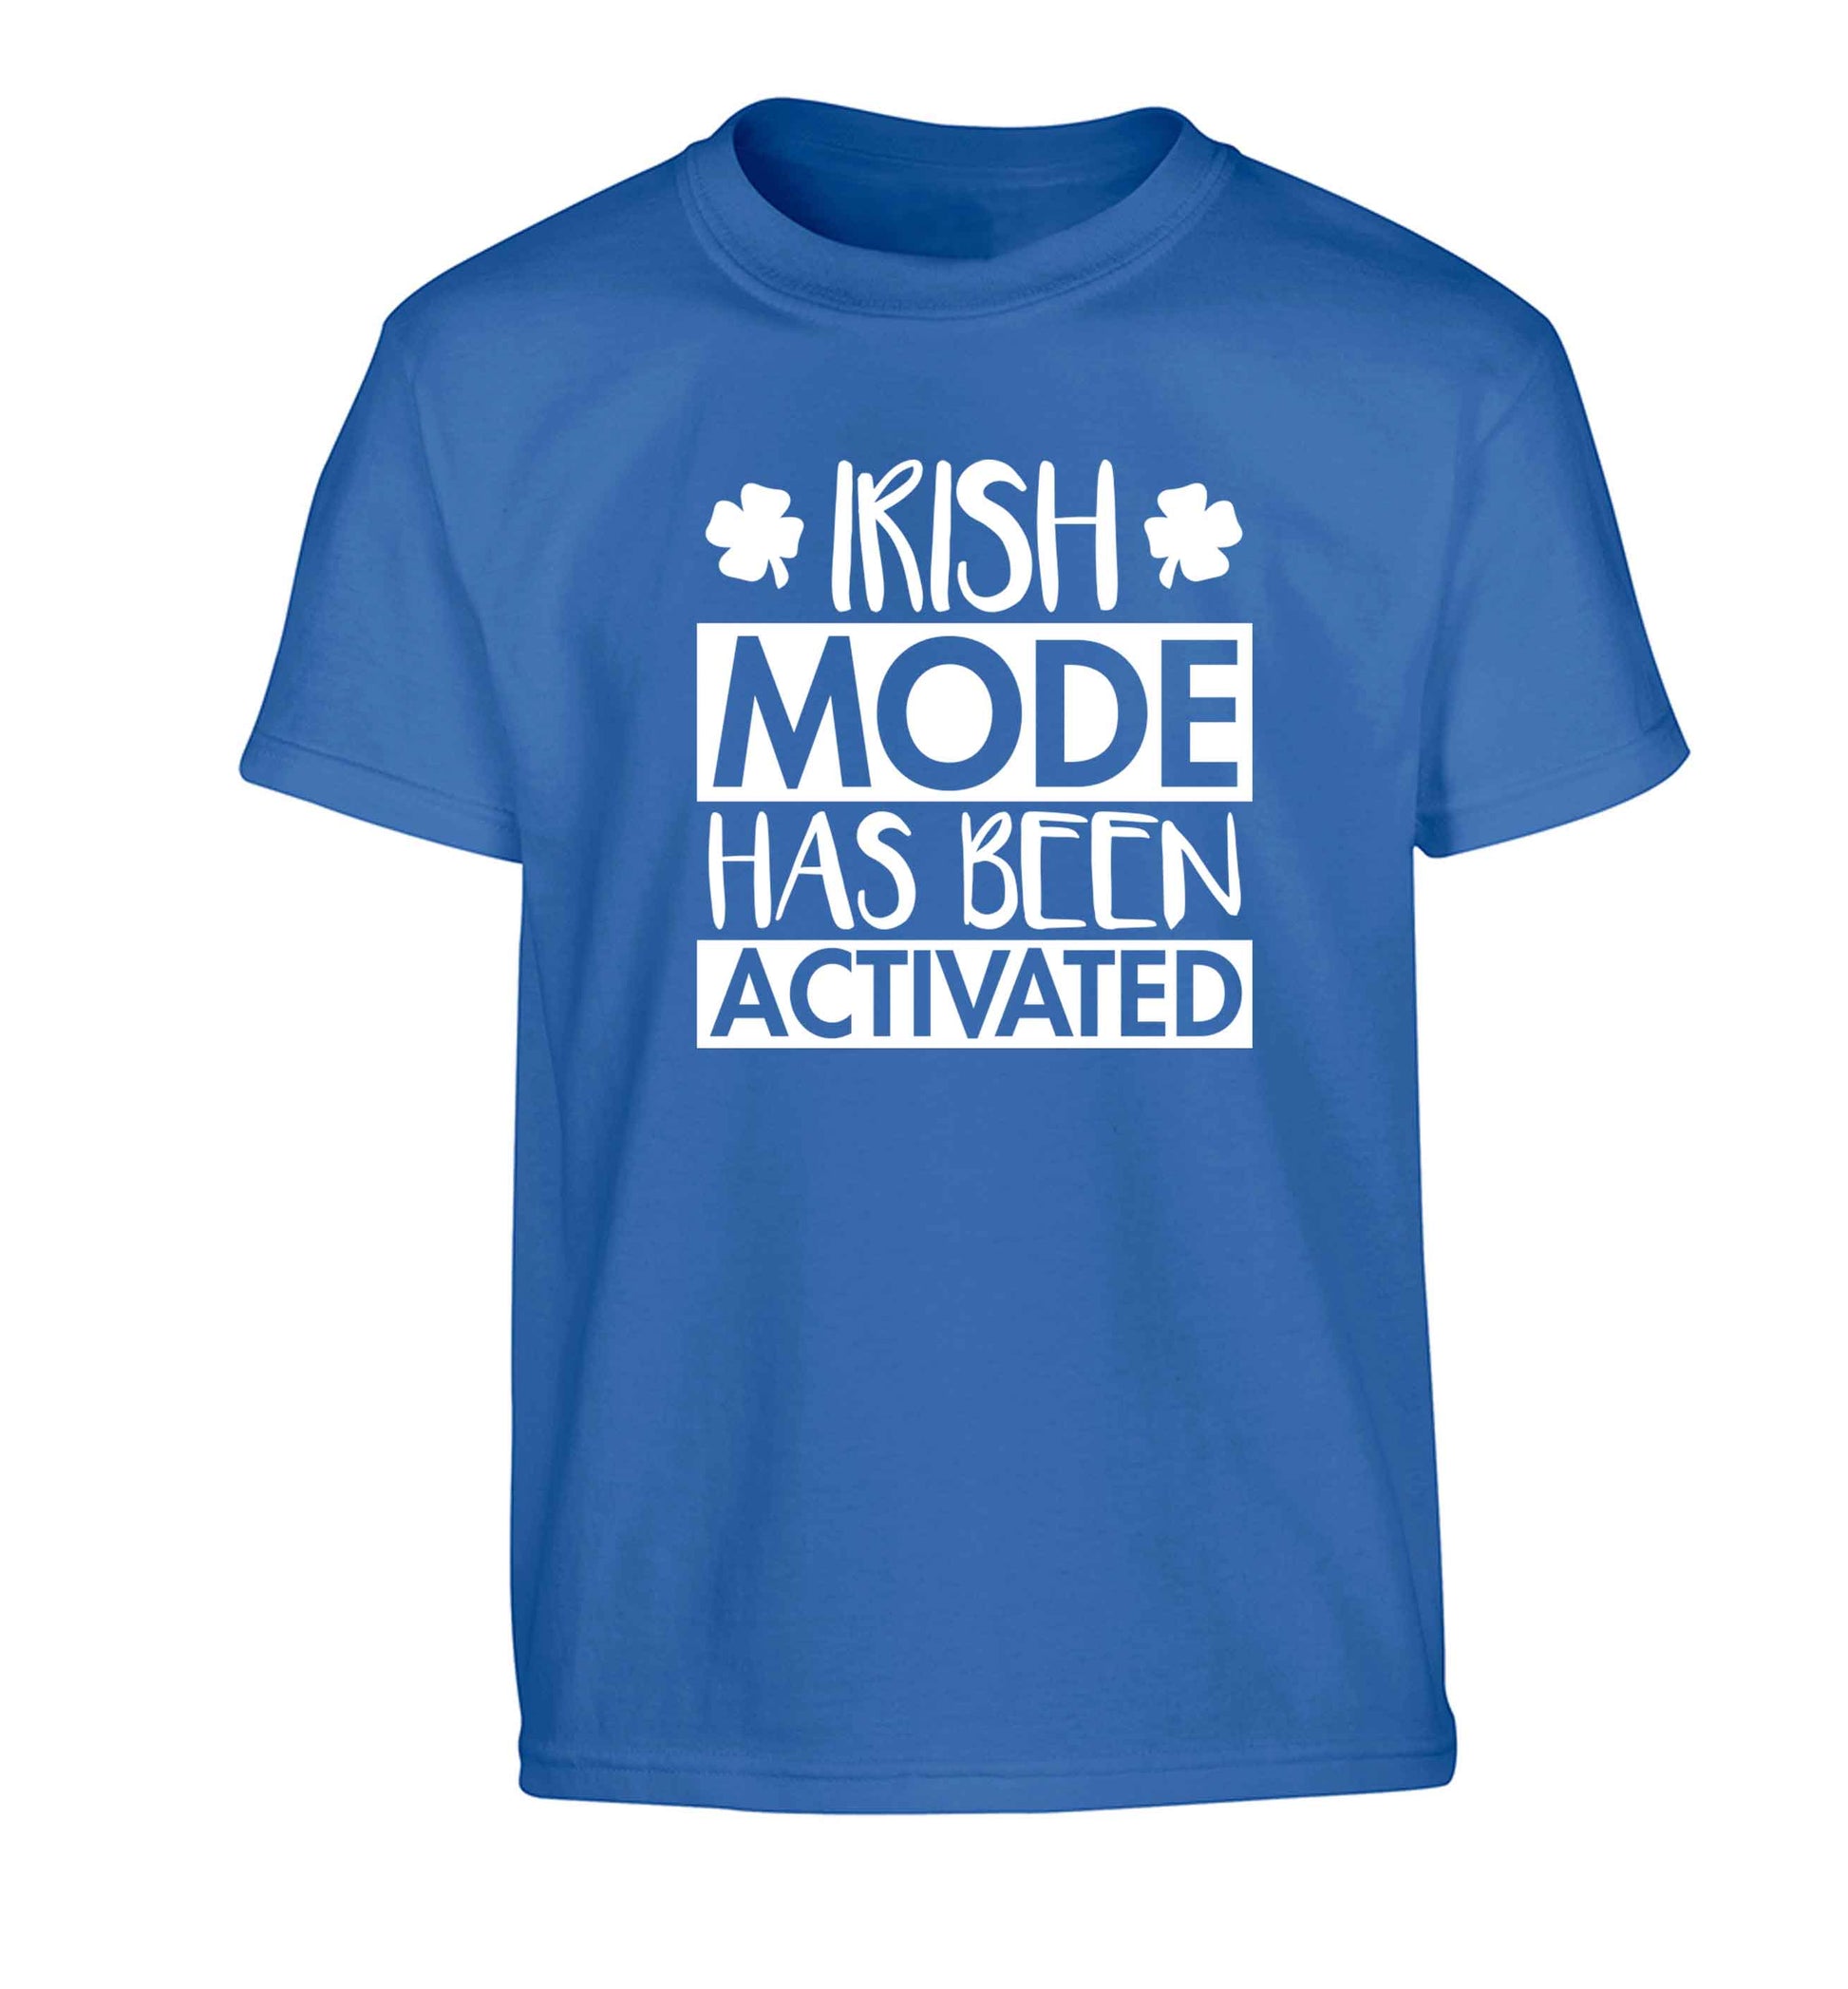 Irish mode has been activated Children's blue Tshirt 12-13 Years